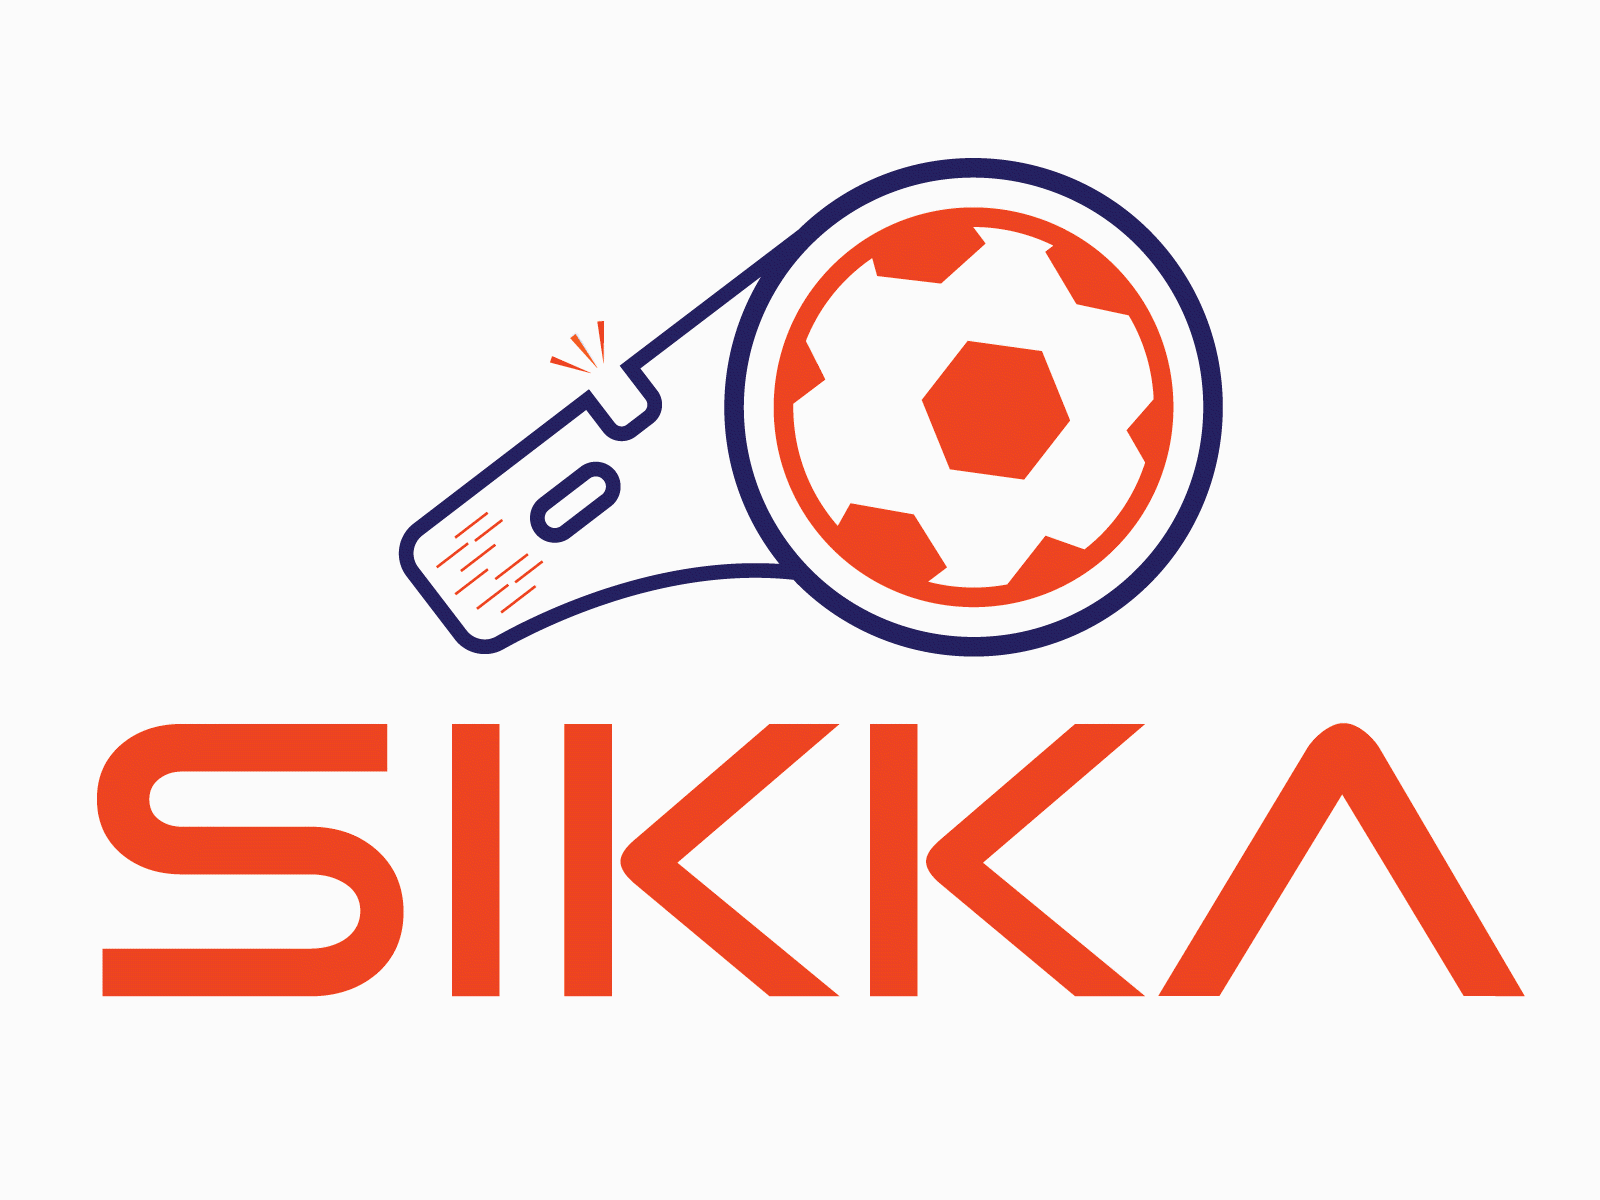 Logo Animation "SIKKA" animated gif animated logo animation design flat icon illustration logo minimal motion design